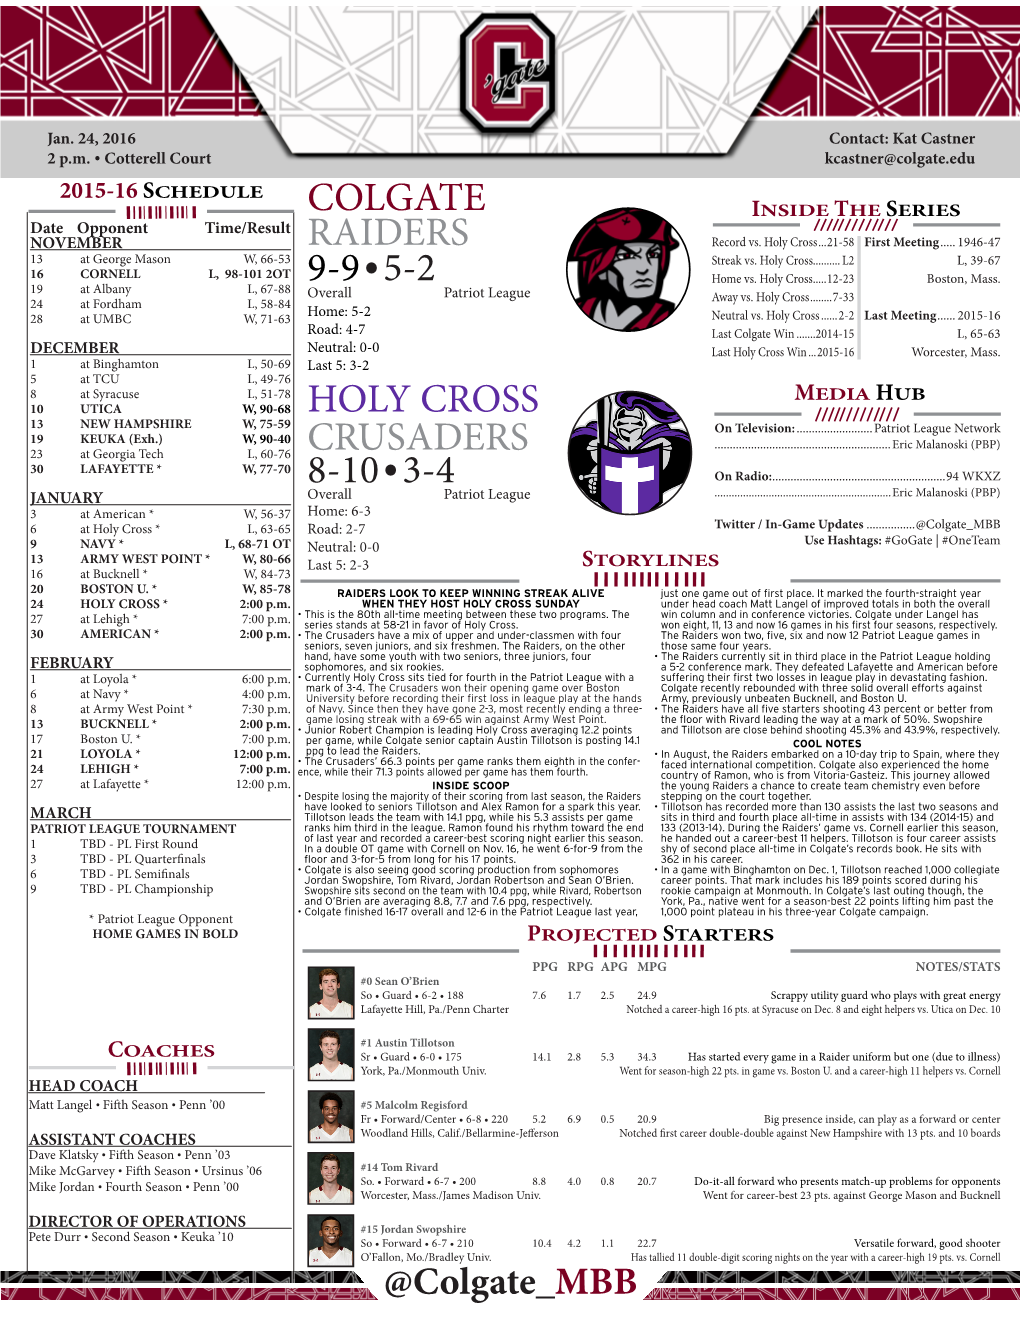 Colgate Holy Cross Raiders Crusaders 9-9•5-2 8-10•3-4